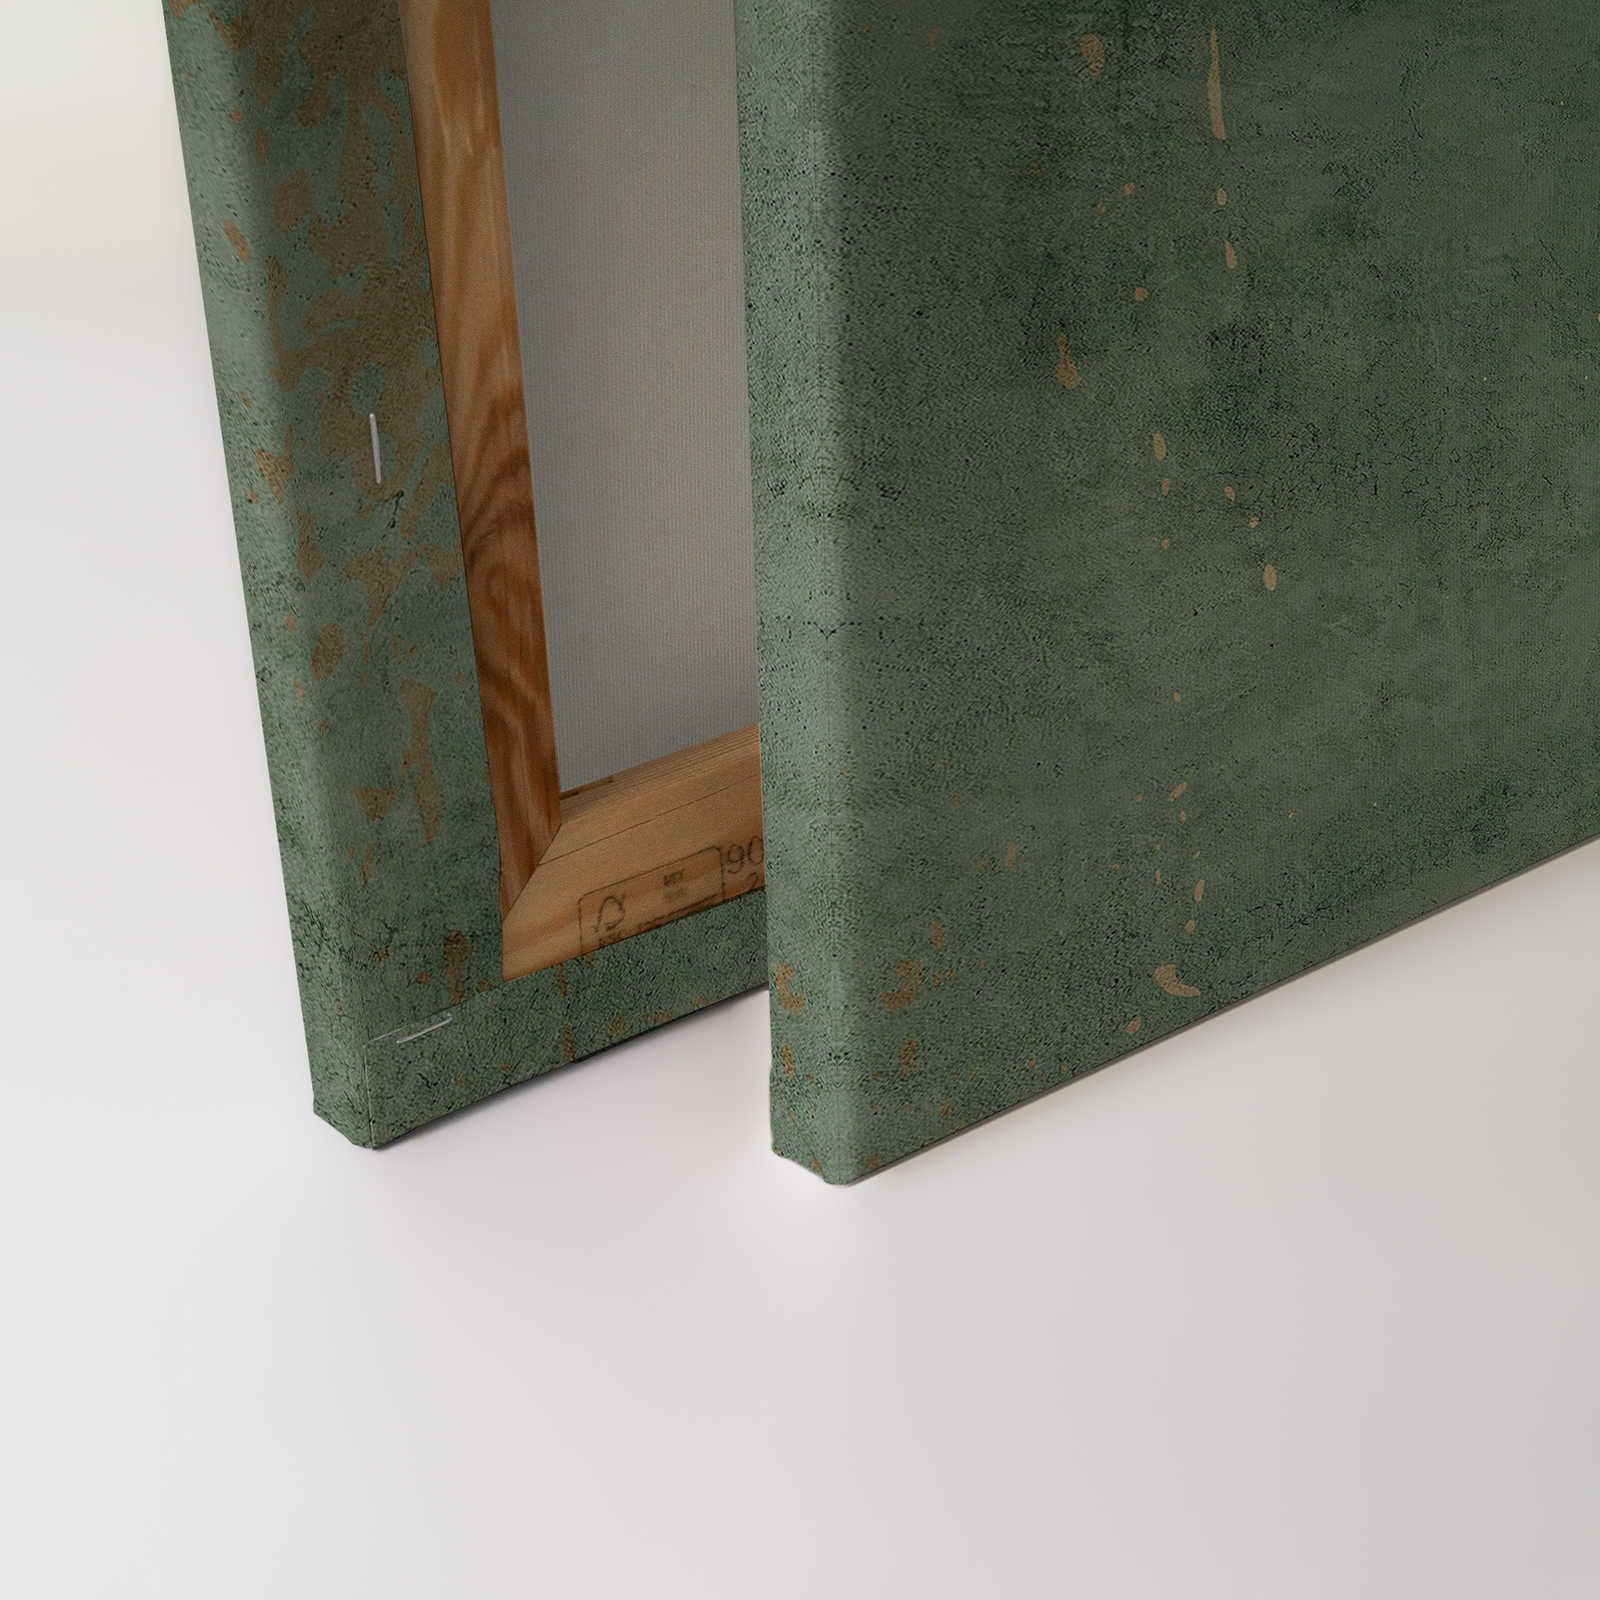             Vintage Wall 1 - Toile vert sauge & or aspect plâtre usé - 0,90 m x 0,60 m
        